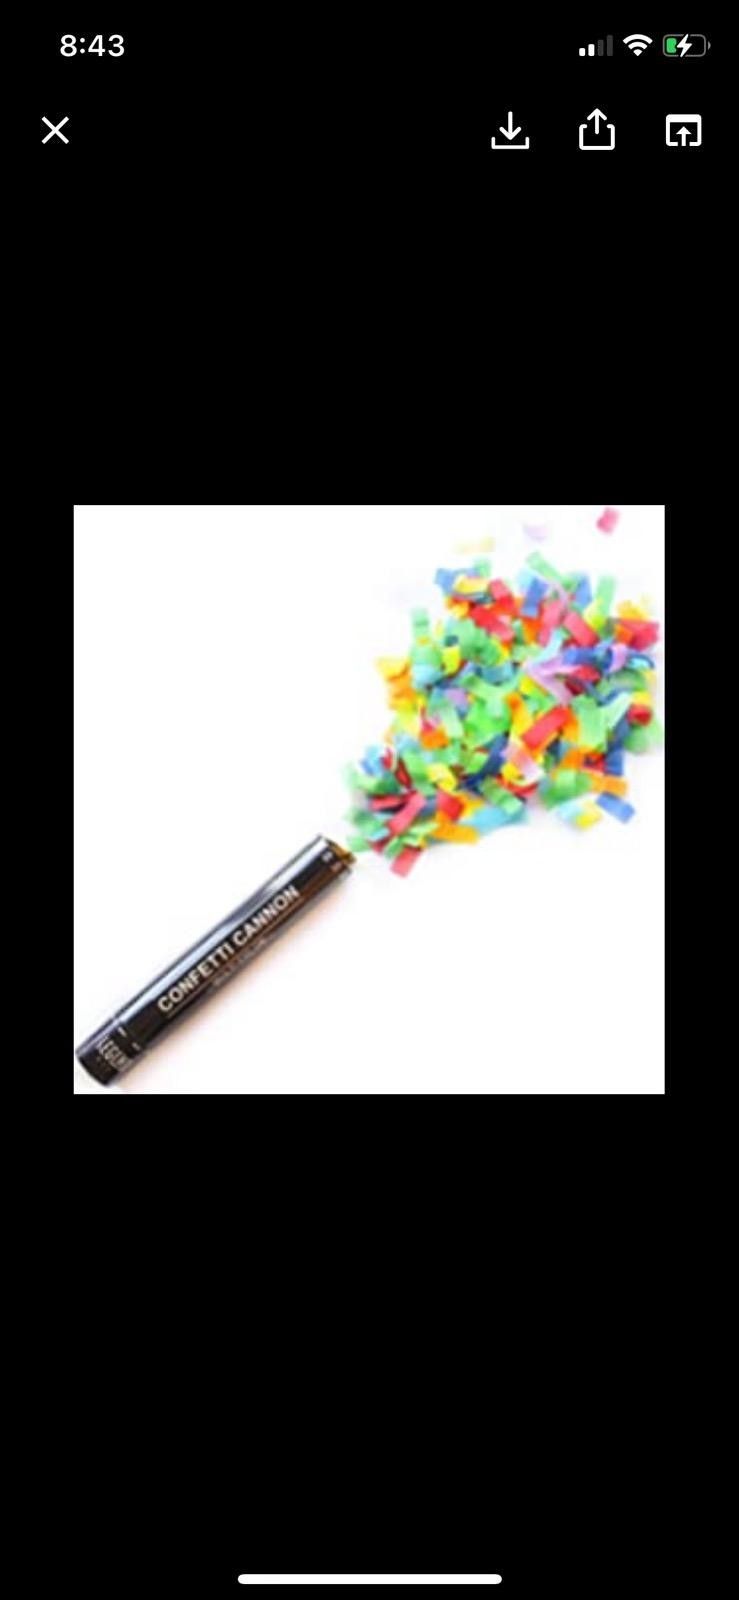 Multicolored Confetti Cannon